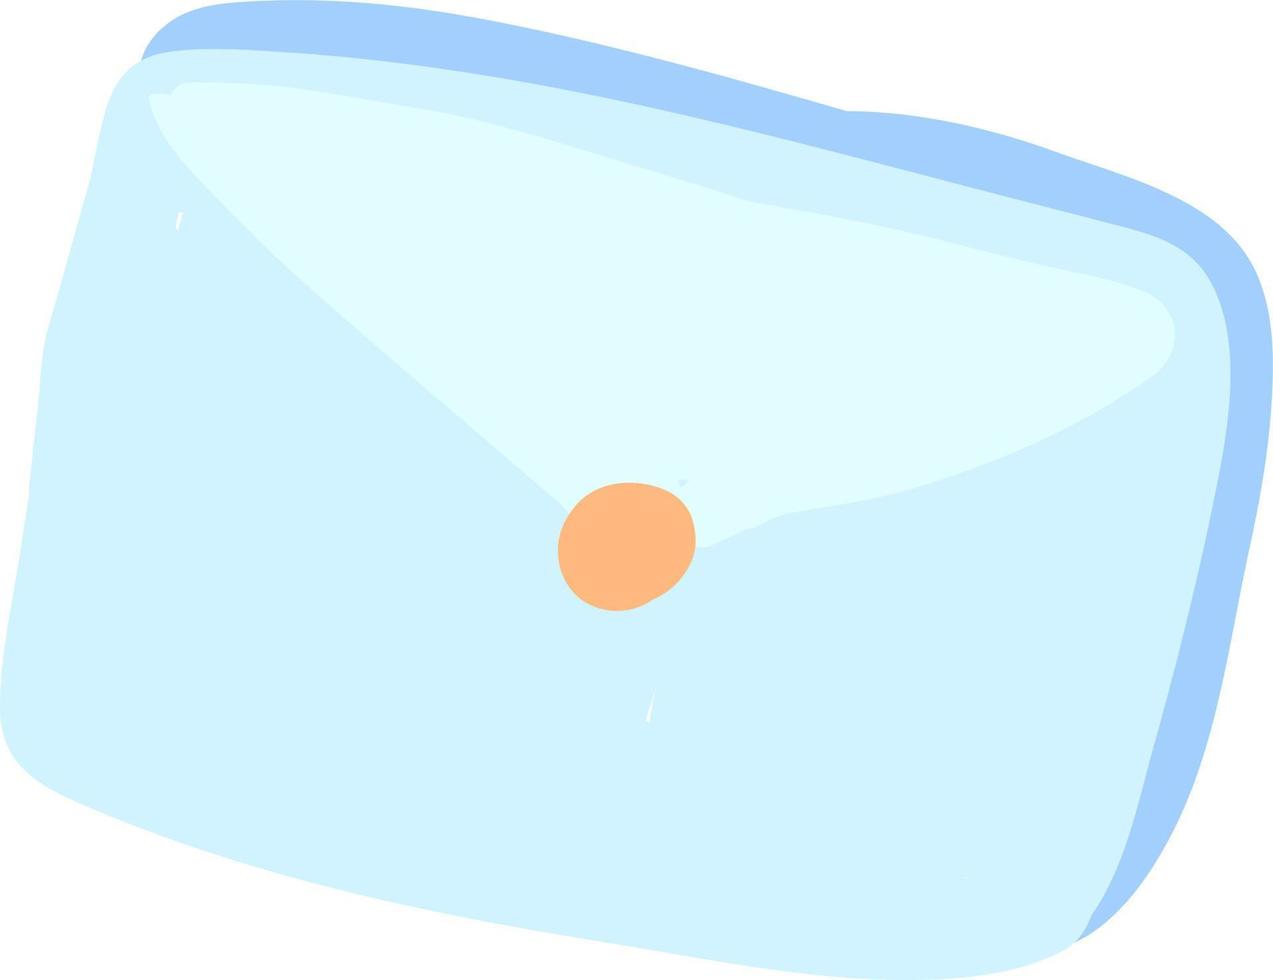 Blue envelope, illustration, vector on white background.